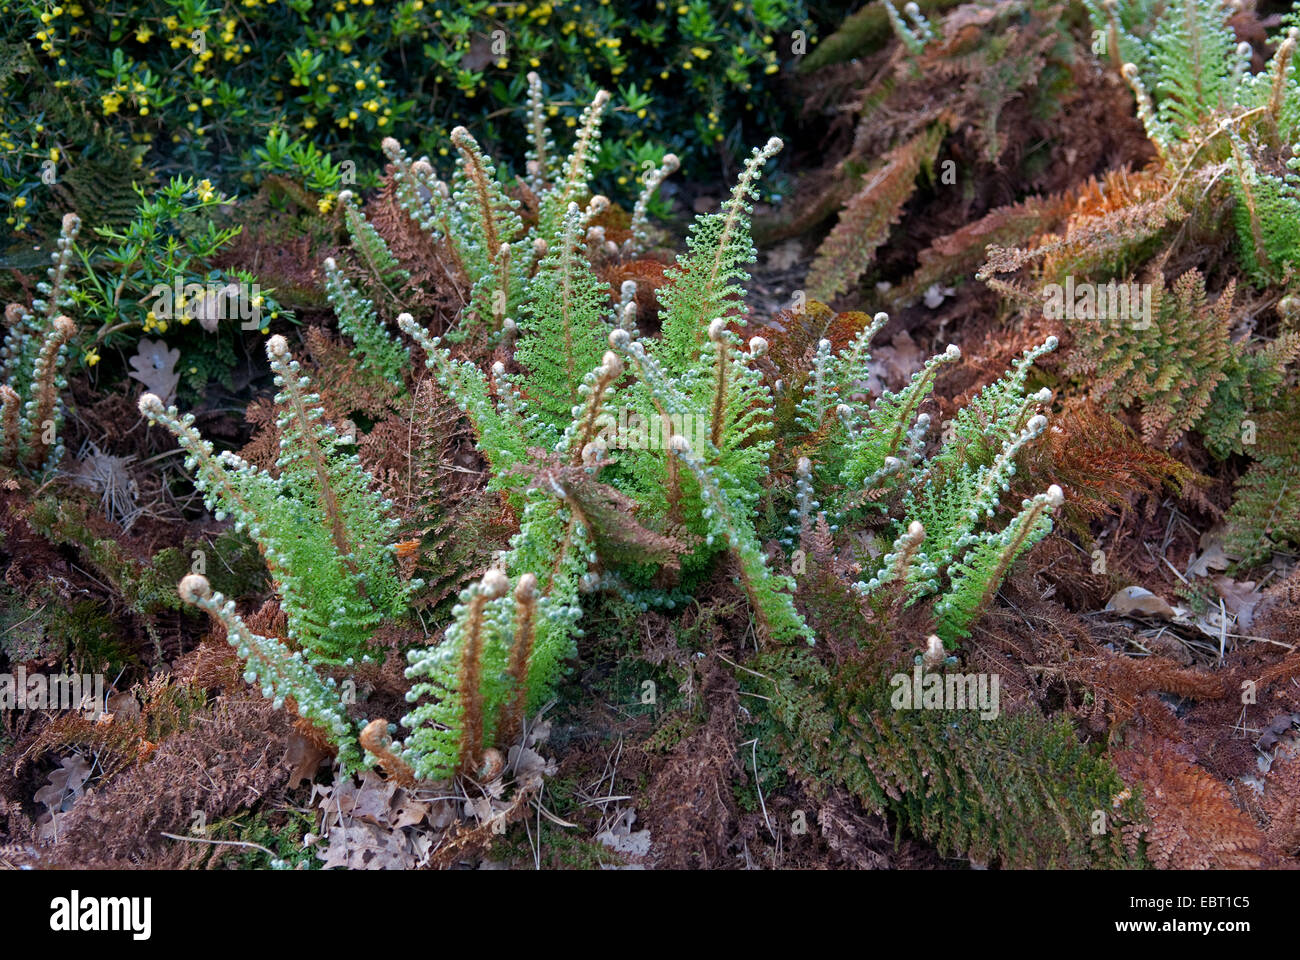 soft shield fern (Polystichum setiferum 'Plumosum Densum', Polystichum setiferum Plumosum Densum), cultivar Plumosum Densum Stock Photo